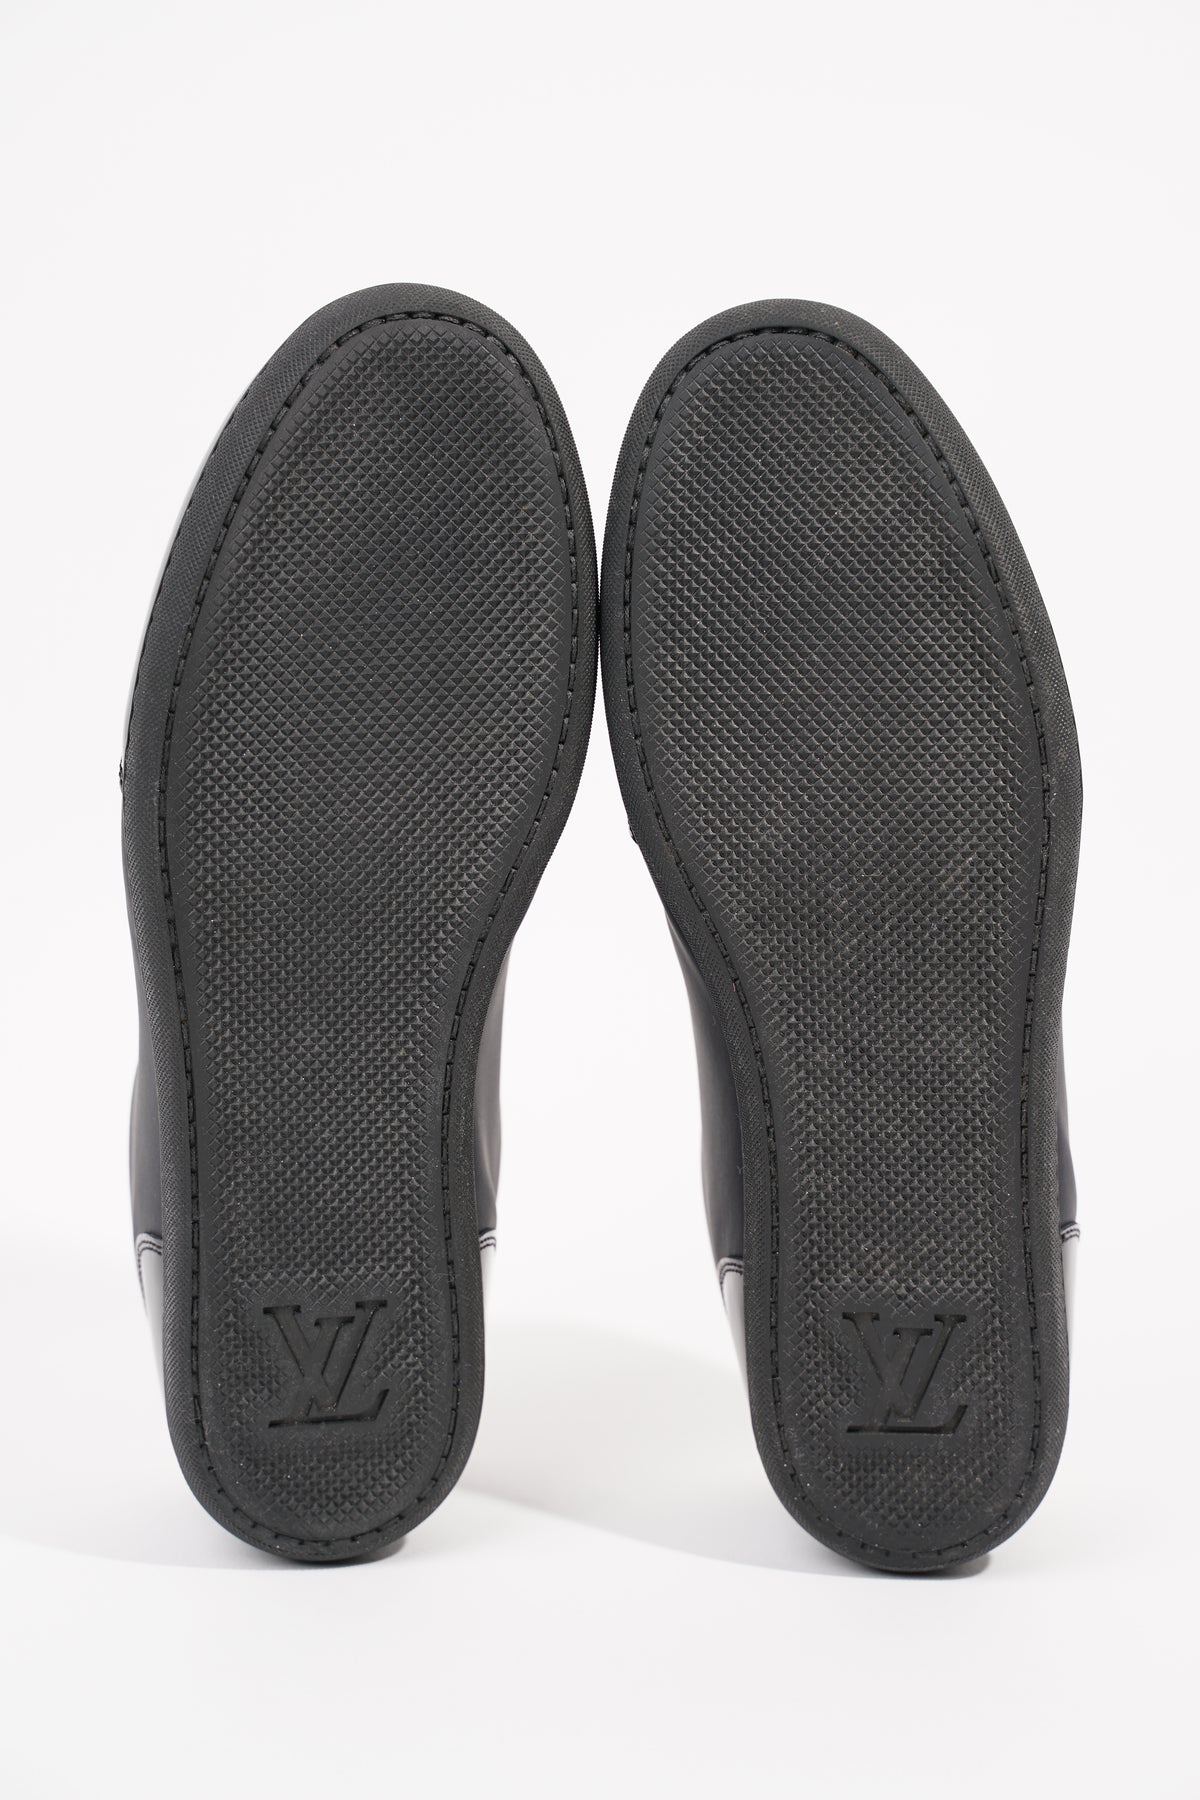 Louis Vuitton Womens Low Top Sneaker Black / Gold EU 36 / UK 3